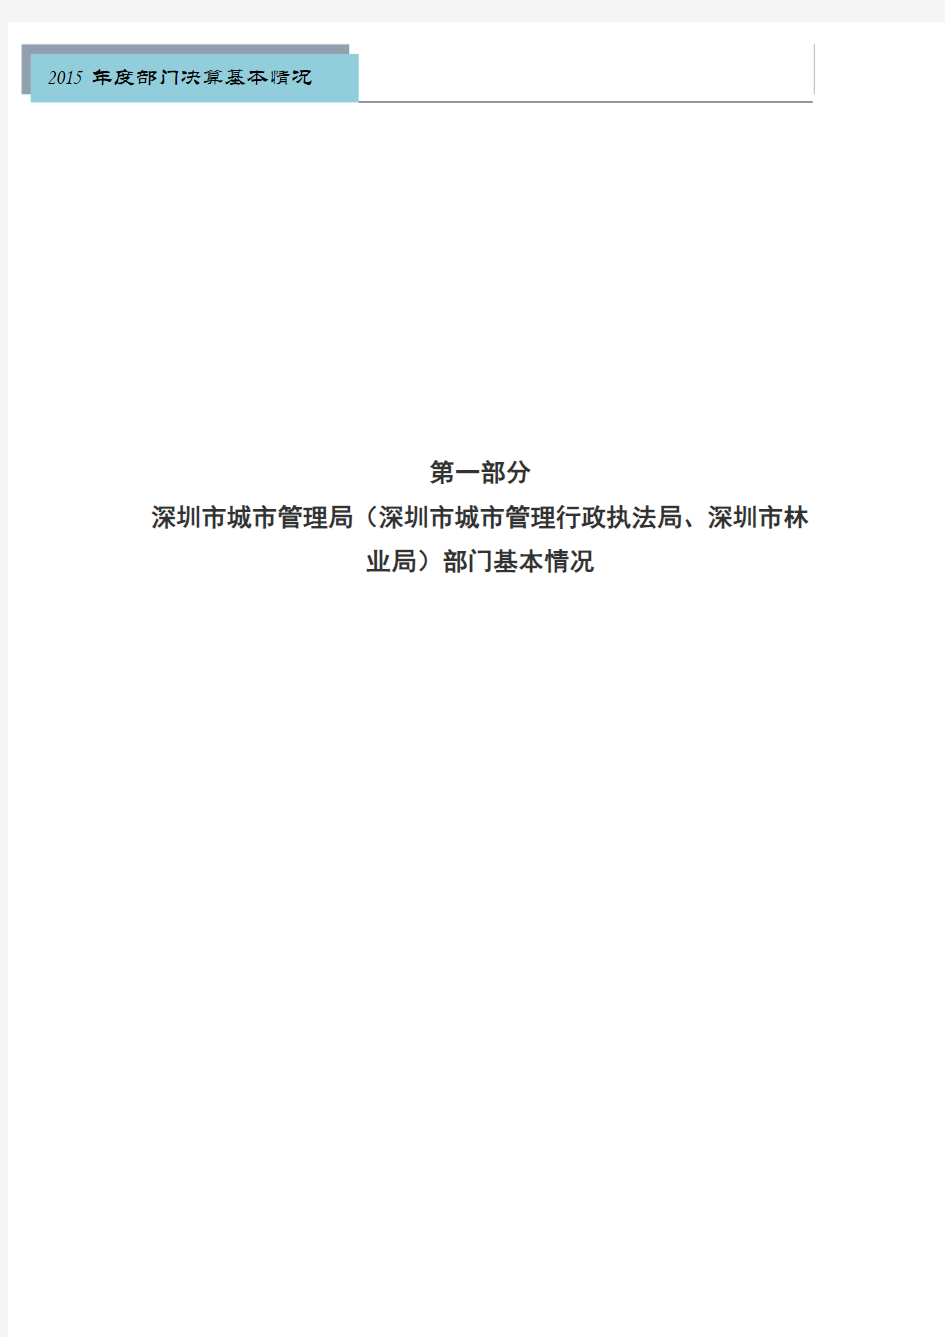 第一部分 深圳市城市管理局概况 一、部门机构设置、职能